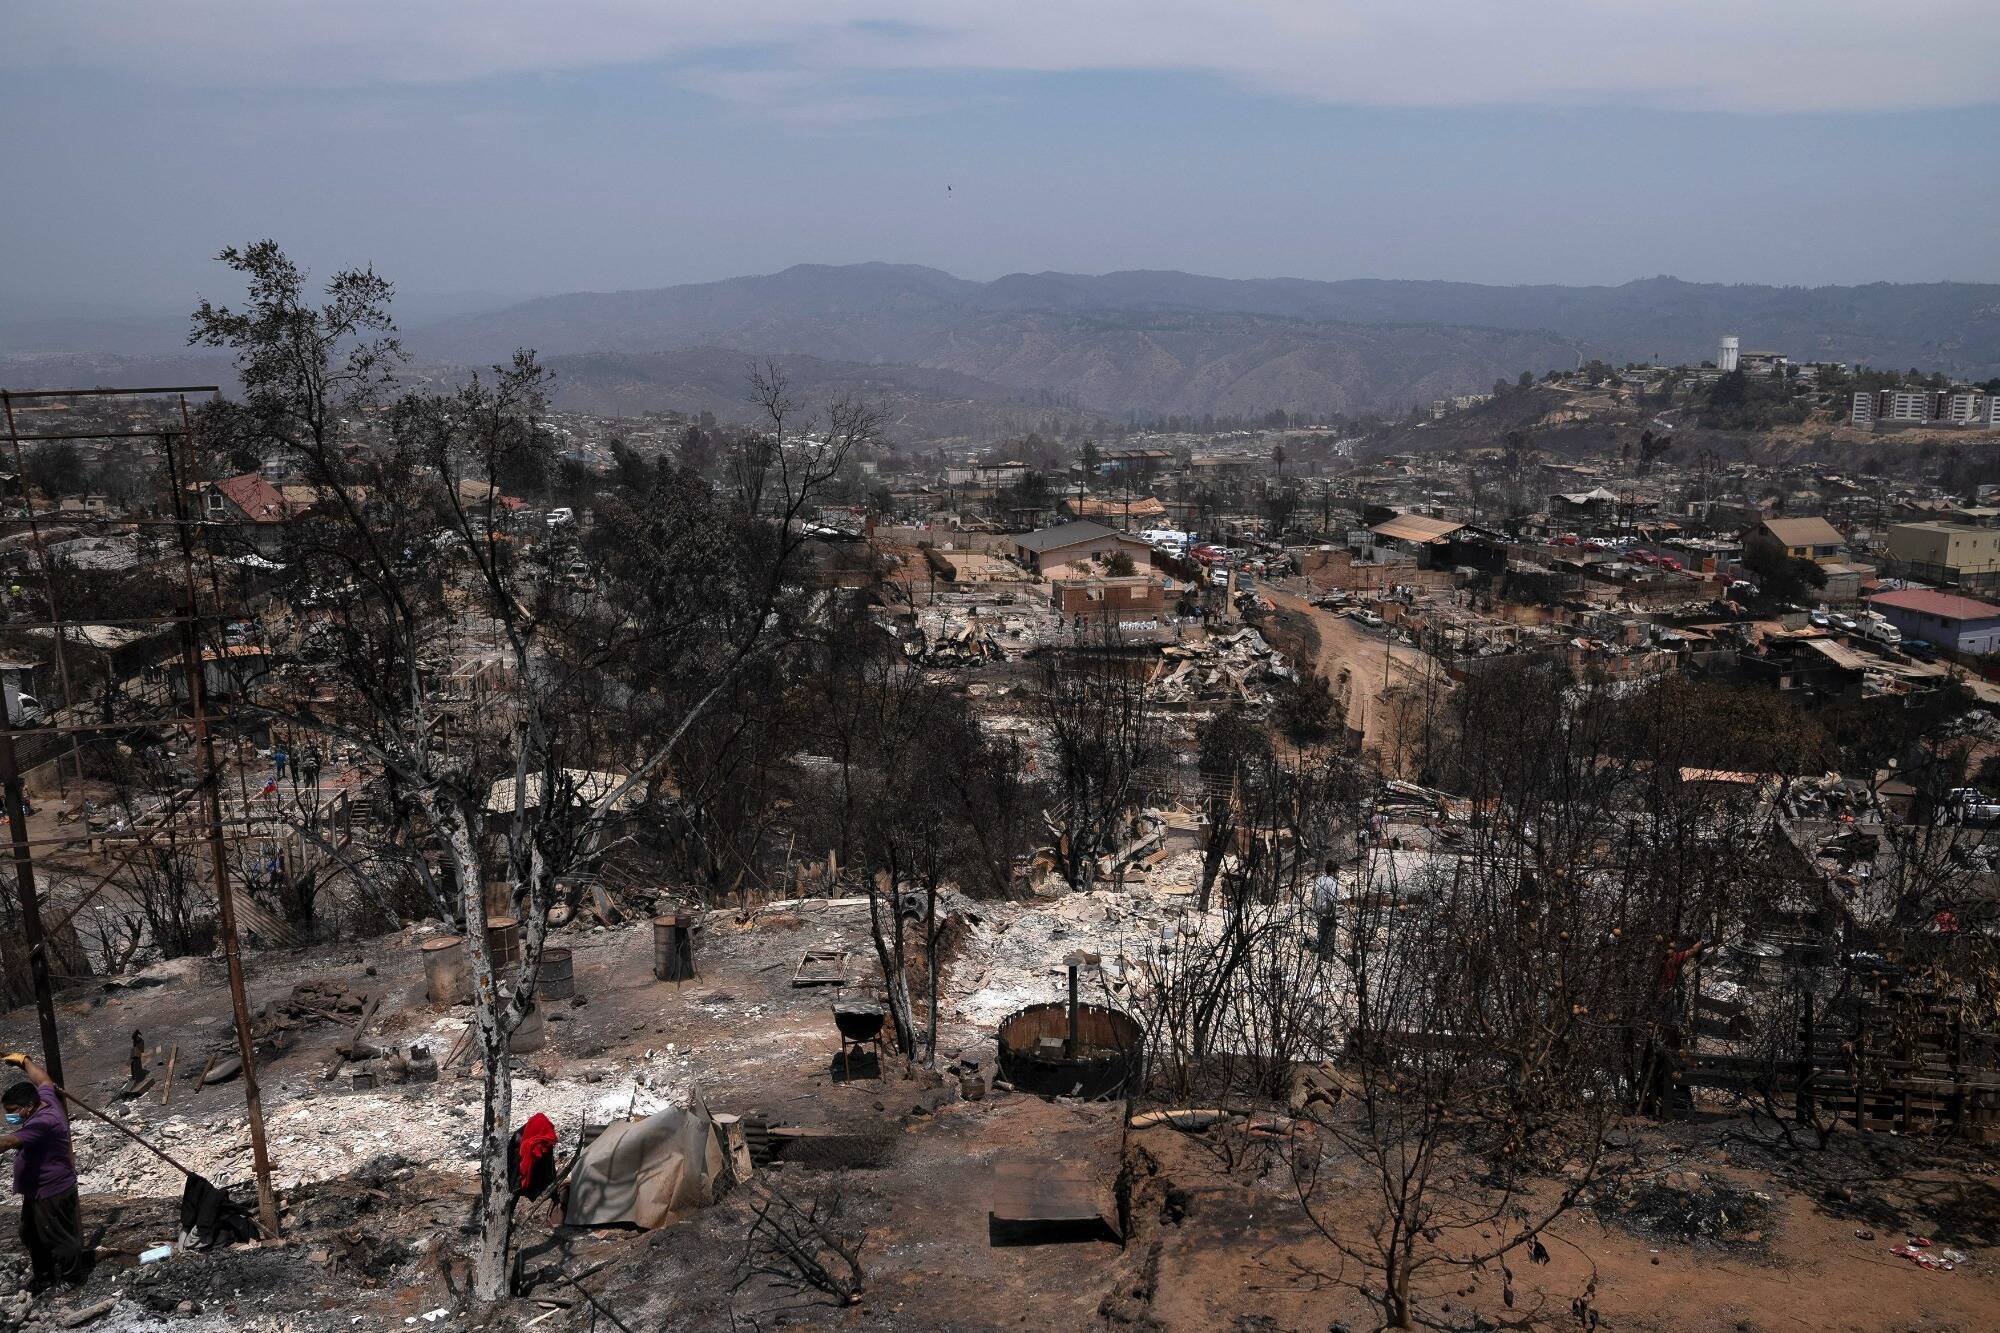 “Mis vecinos fueron quemados”: el horror desde el epicentro del drama en Chile